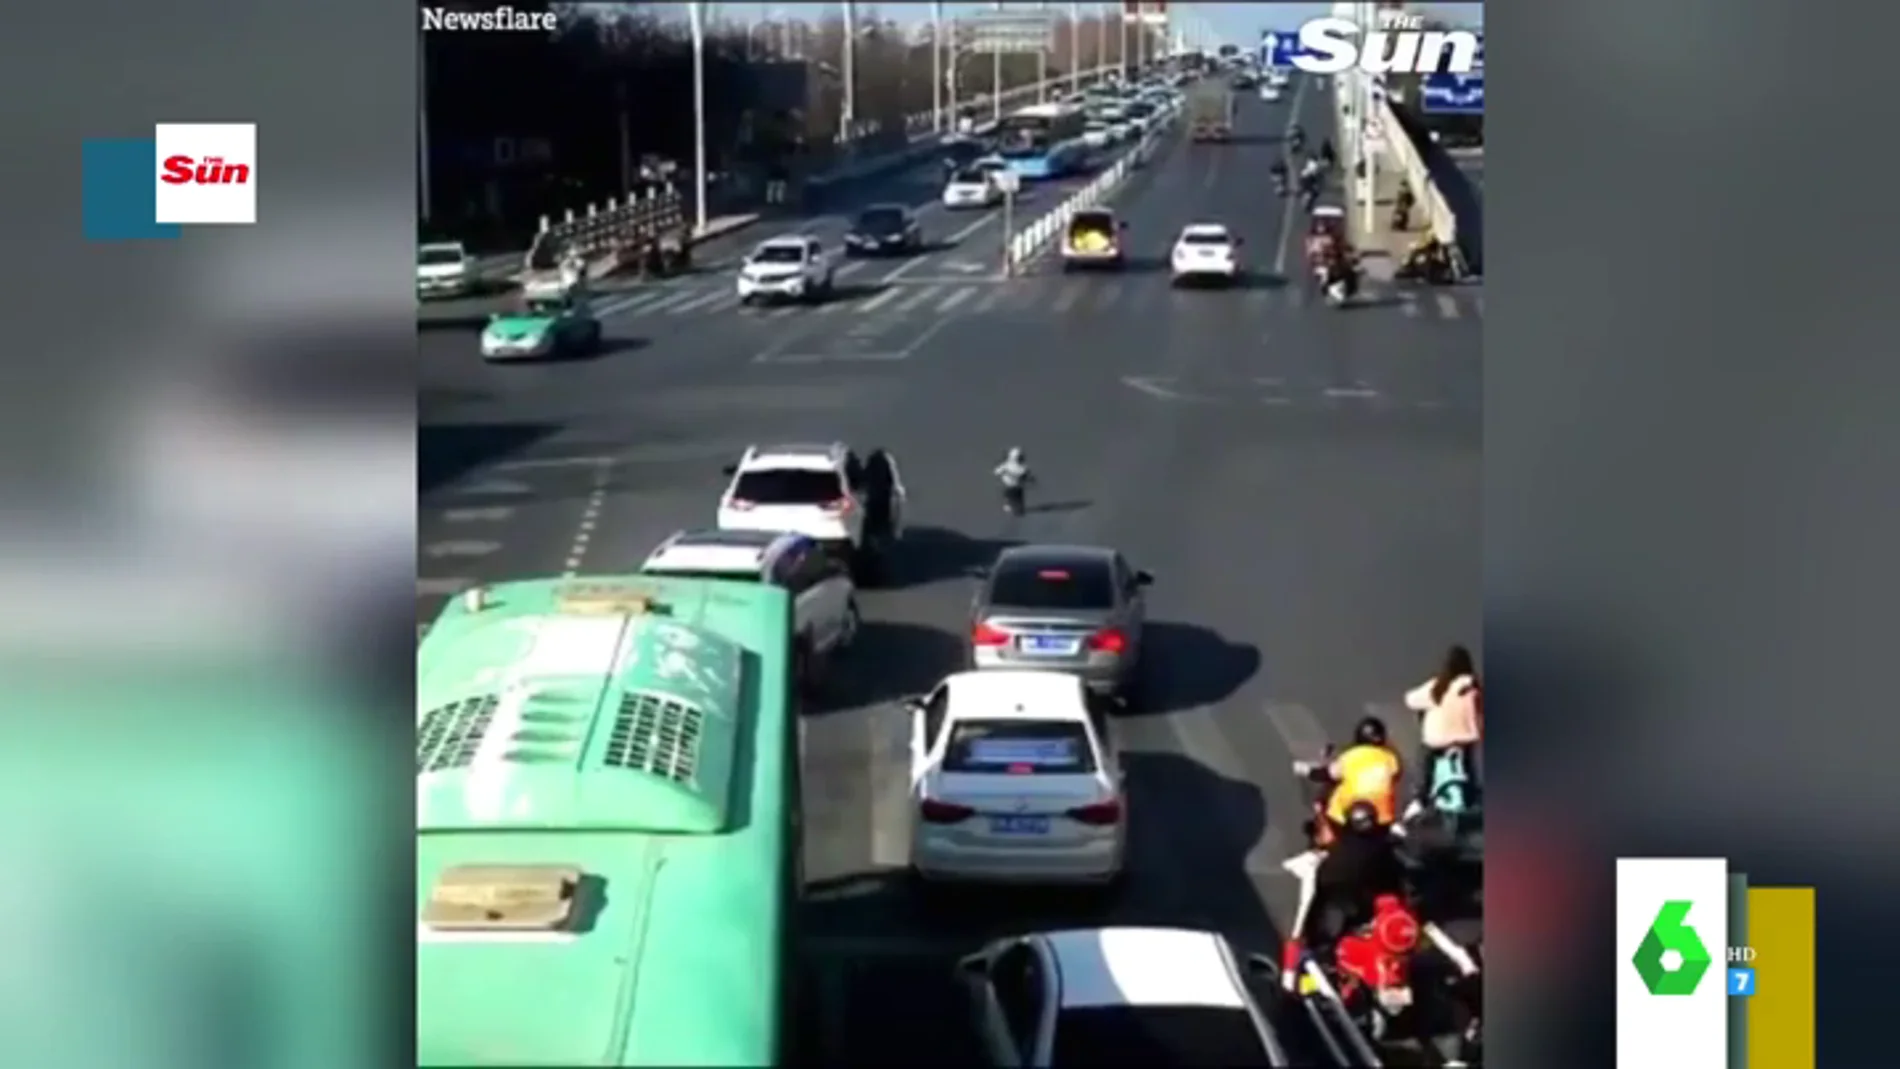 El impresionante momento en el que un niño se cae de un coche en circulación en plena carretera